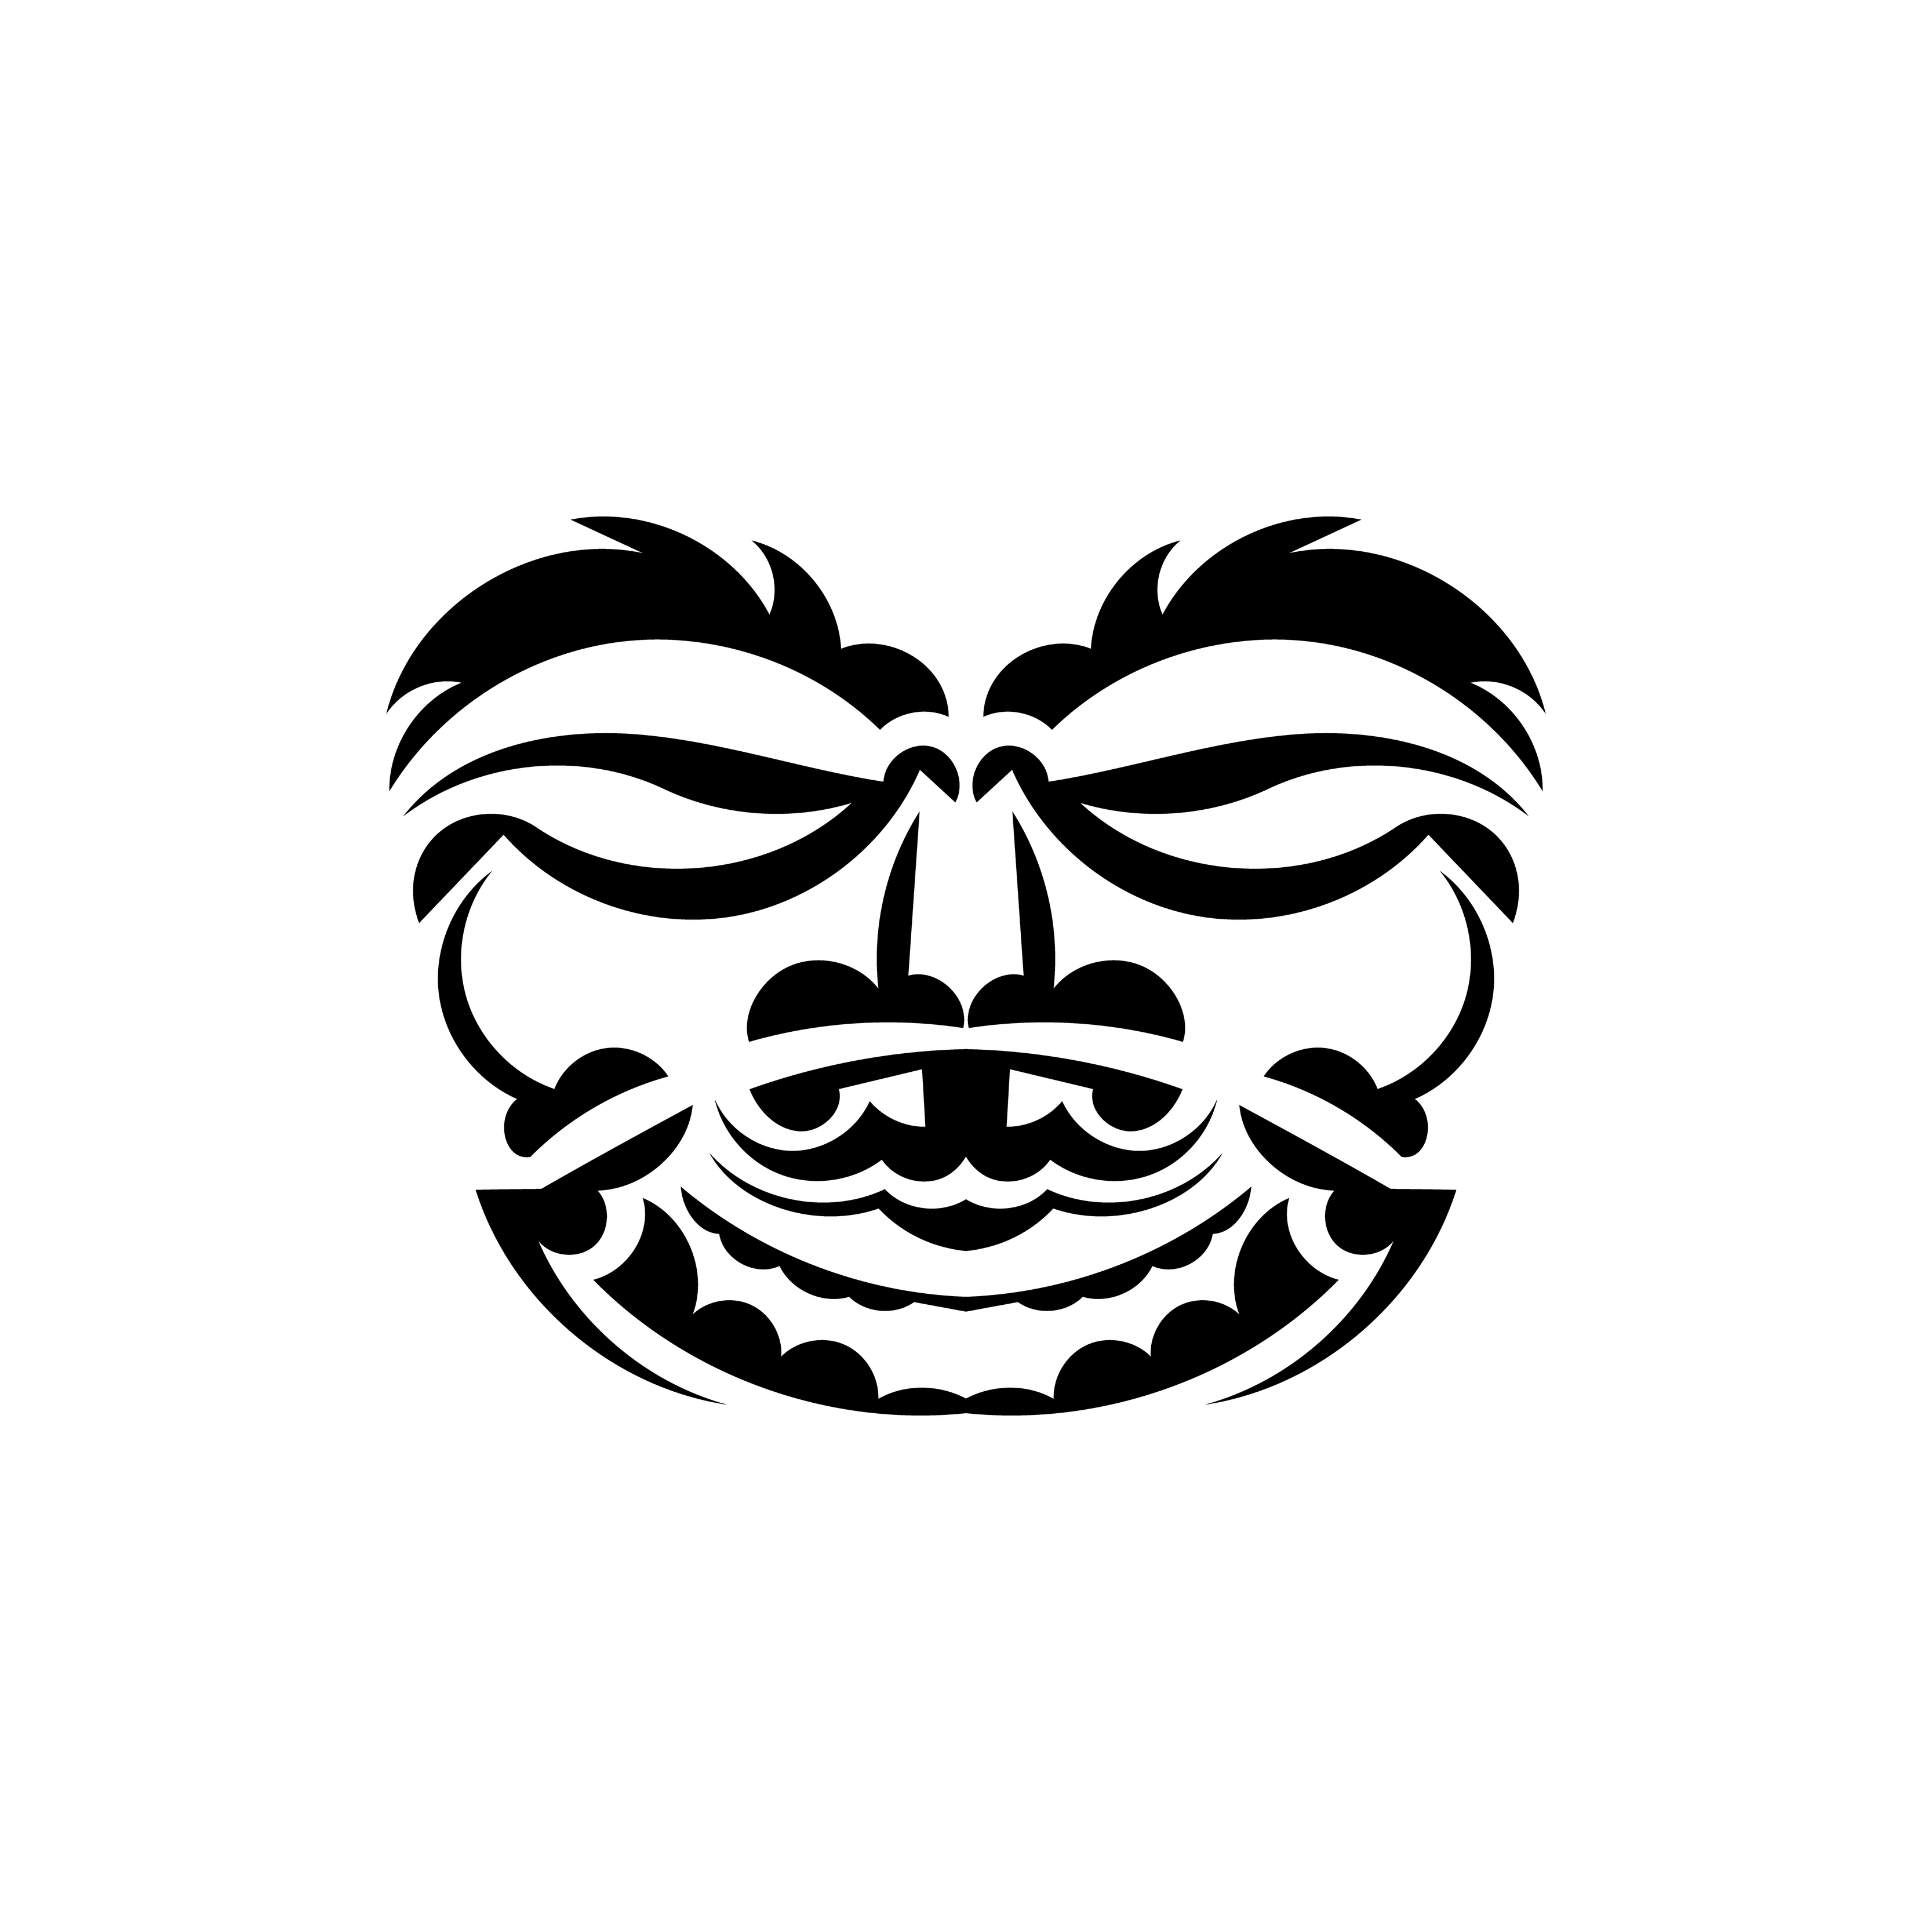 Uma ilustração em preto e branco de um ninja com uma máscara preta no rosto